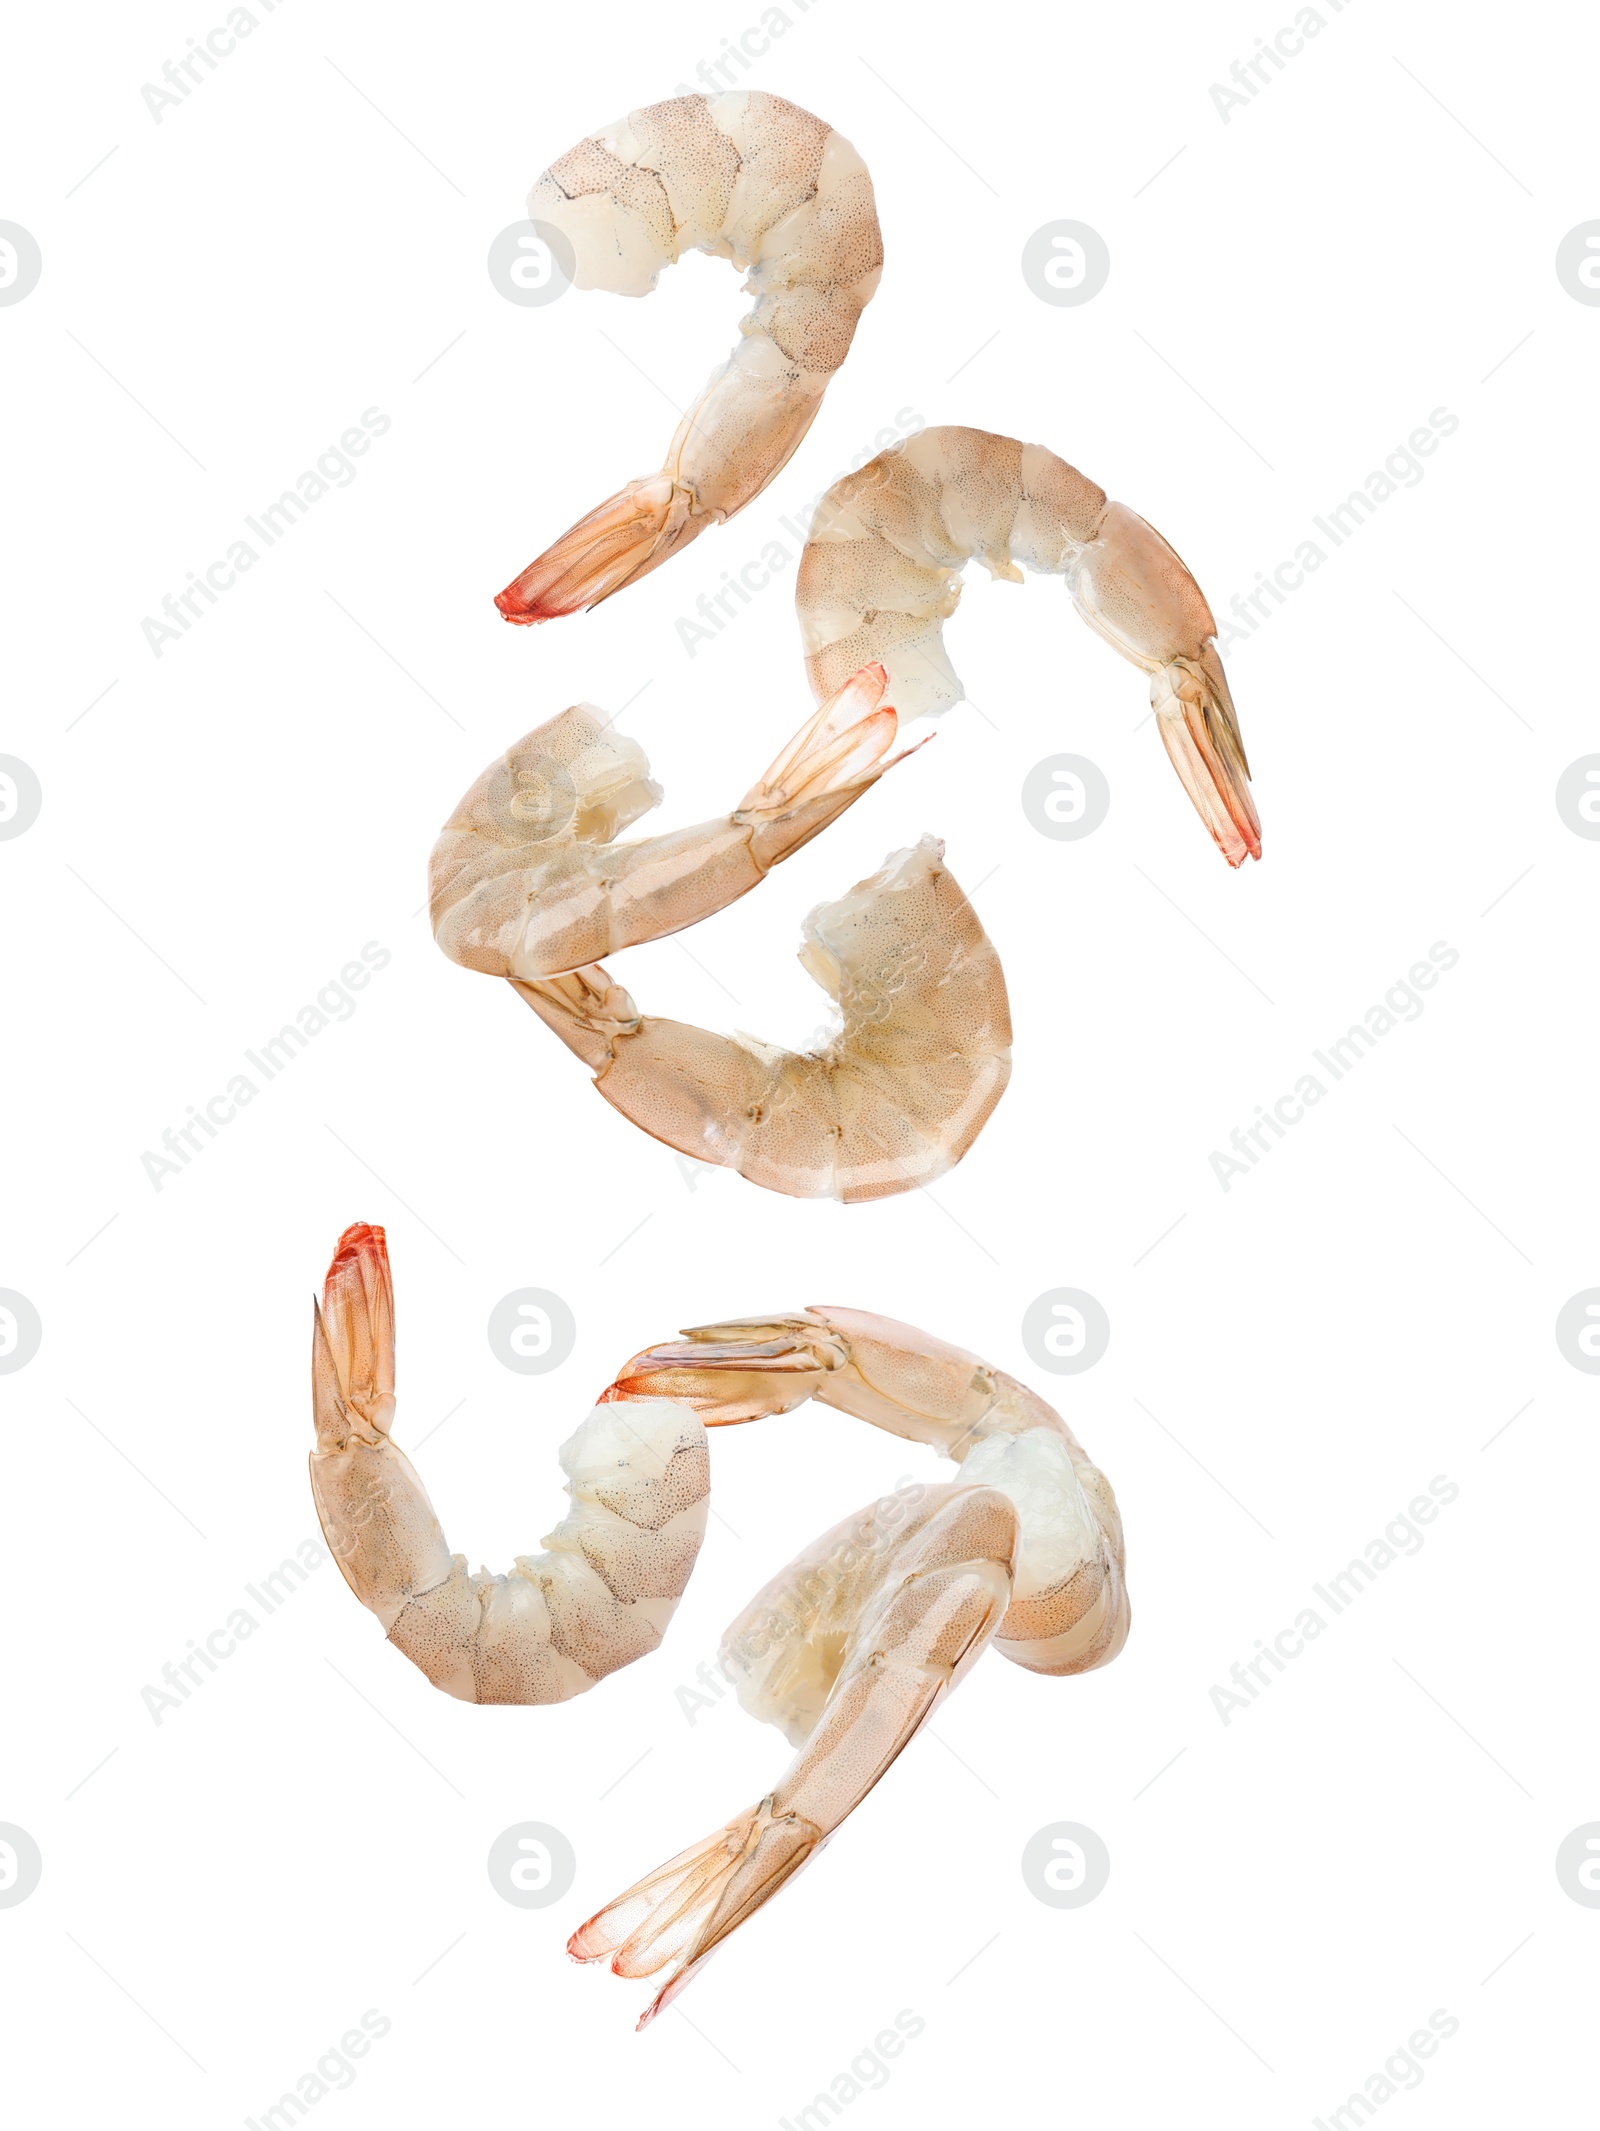 Image of Fresh raw shrimps falling on white background